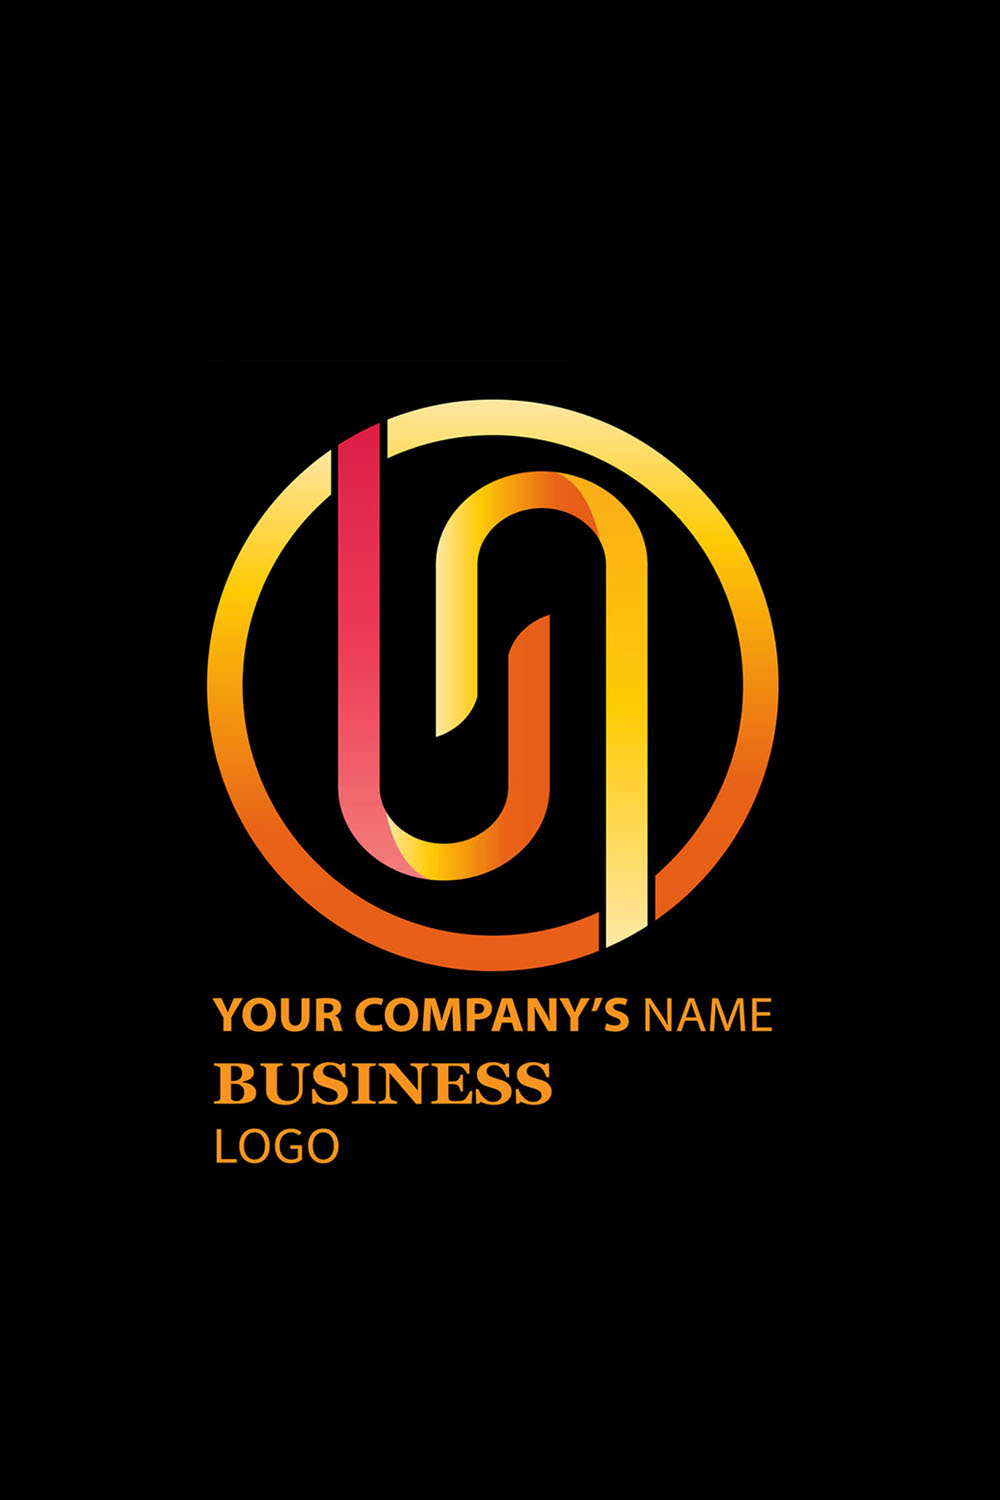 Colorful N Letter Logo Design Inside a Circle pinterest image.